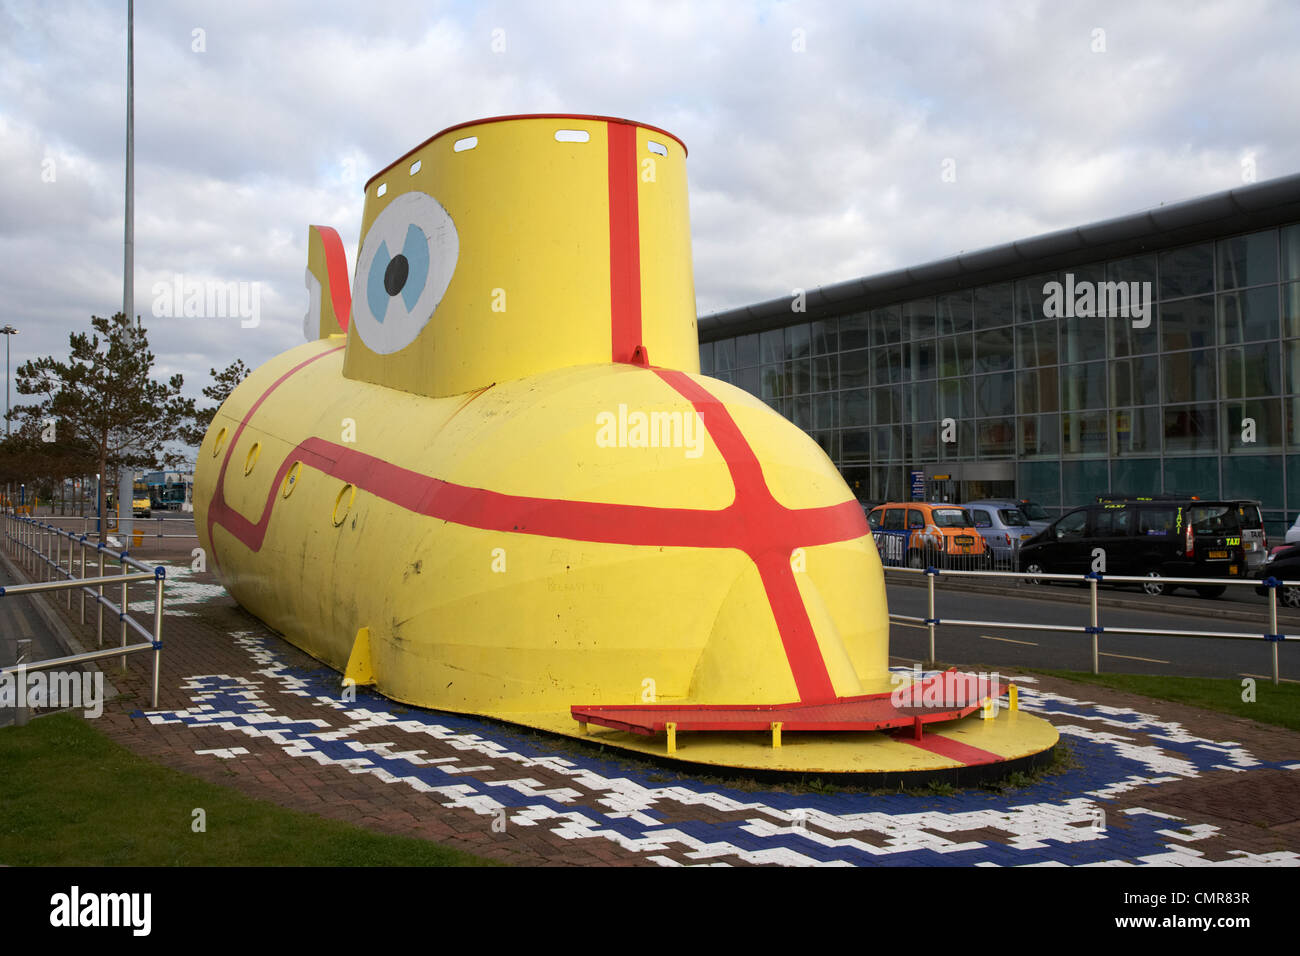 Le sous-marin jaune des Beatles à l'extérieur de la sculpture l'aéroport john Lennon de Liverpool Merseyside uk. Banque D'Images